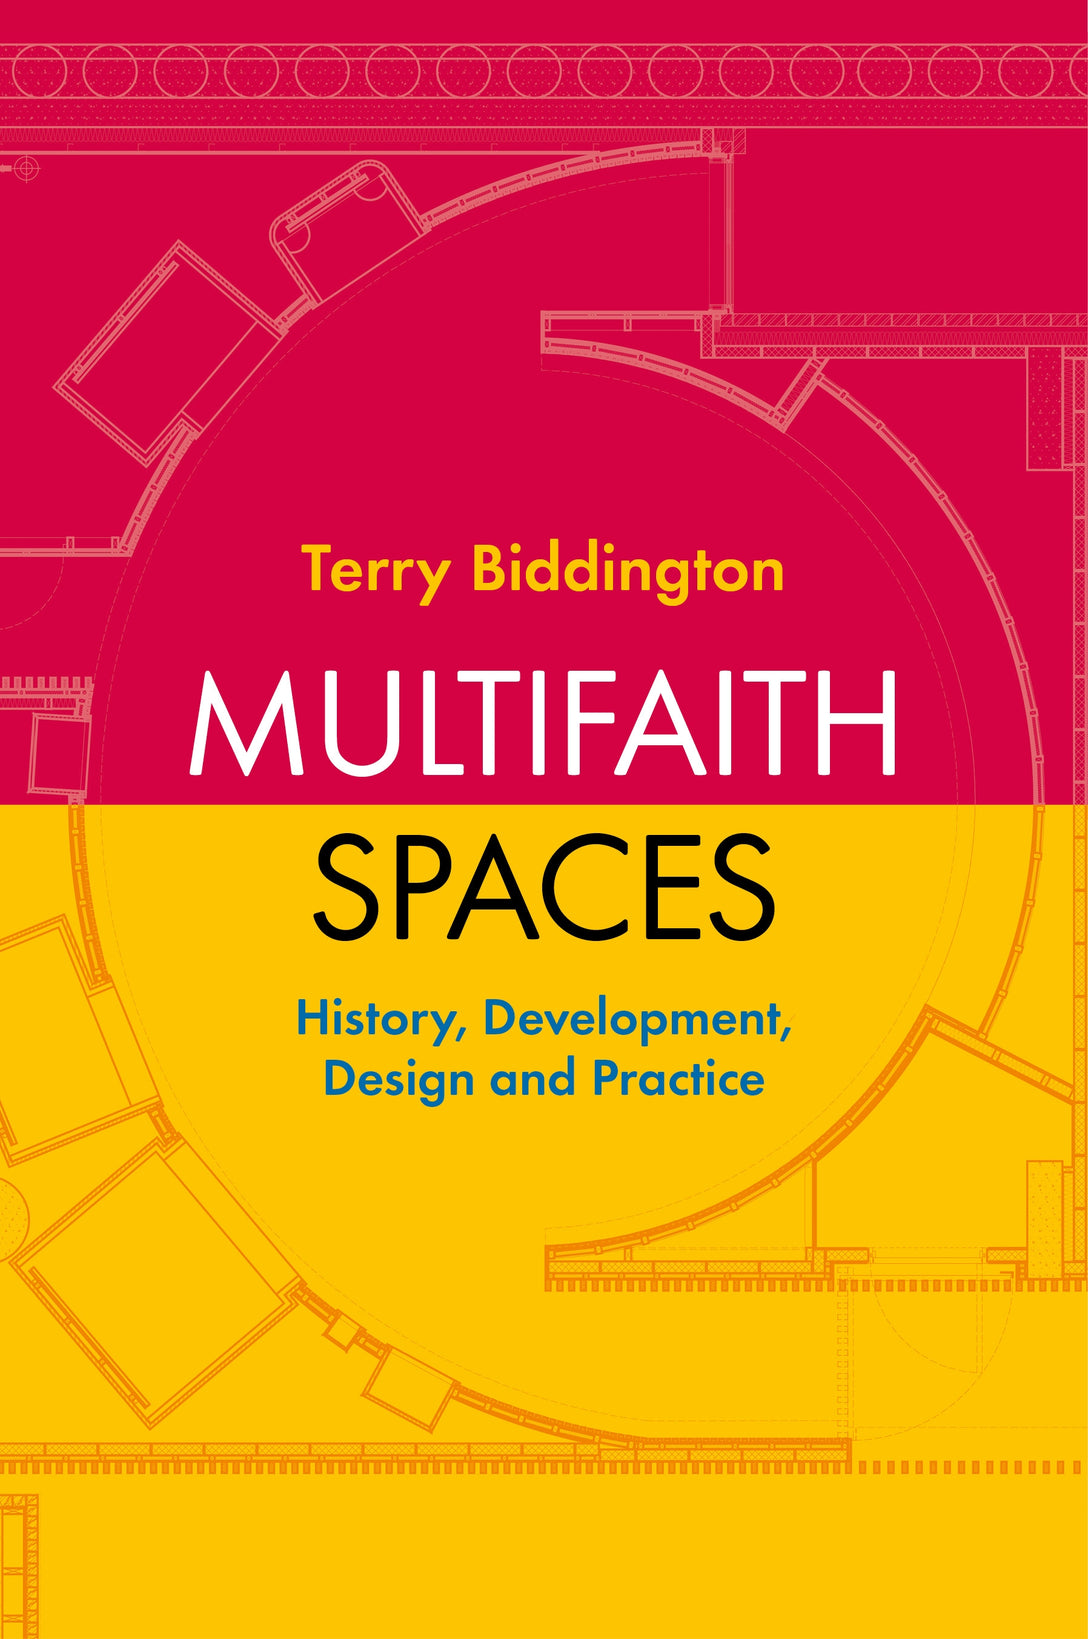 Multifaith Spaces by Terry Biddington